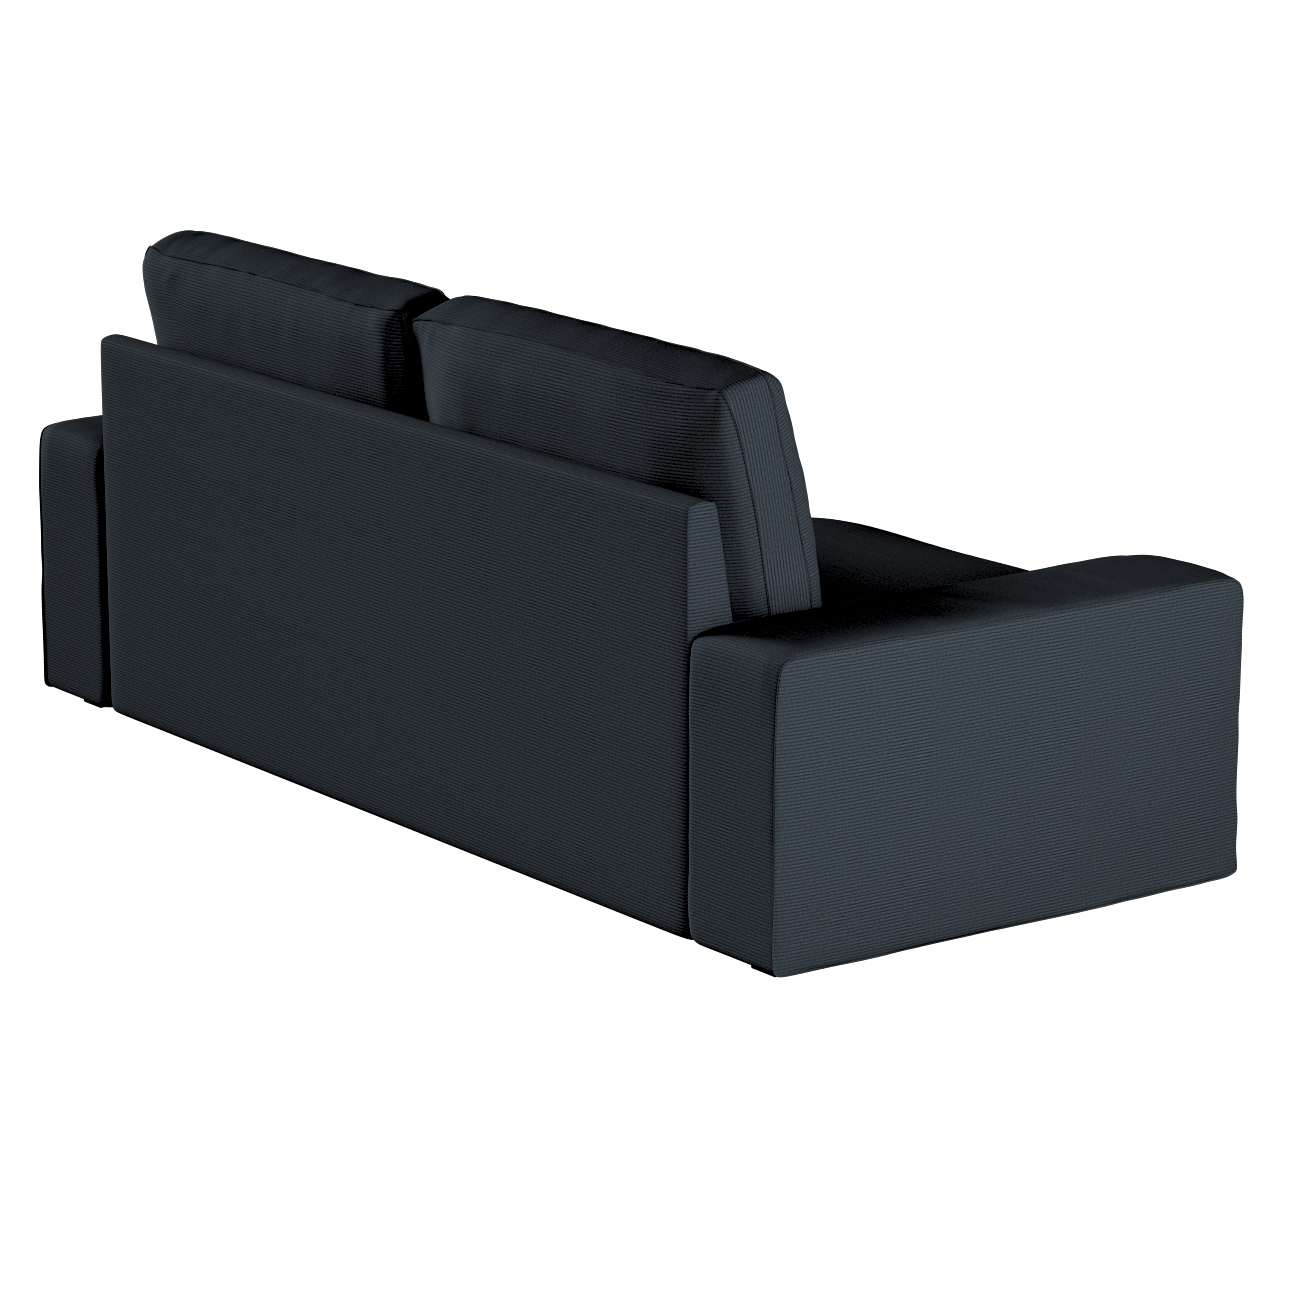 Bezug für Kivik 3-Sitzer Sofa, anthrazit, Bezug für Sofa Kivik 3-Sitzer, Ma günstig online kaufen